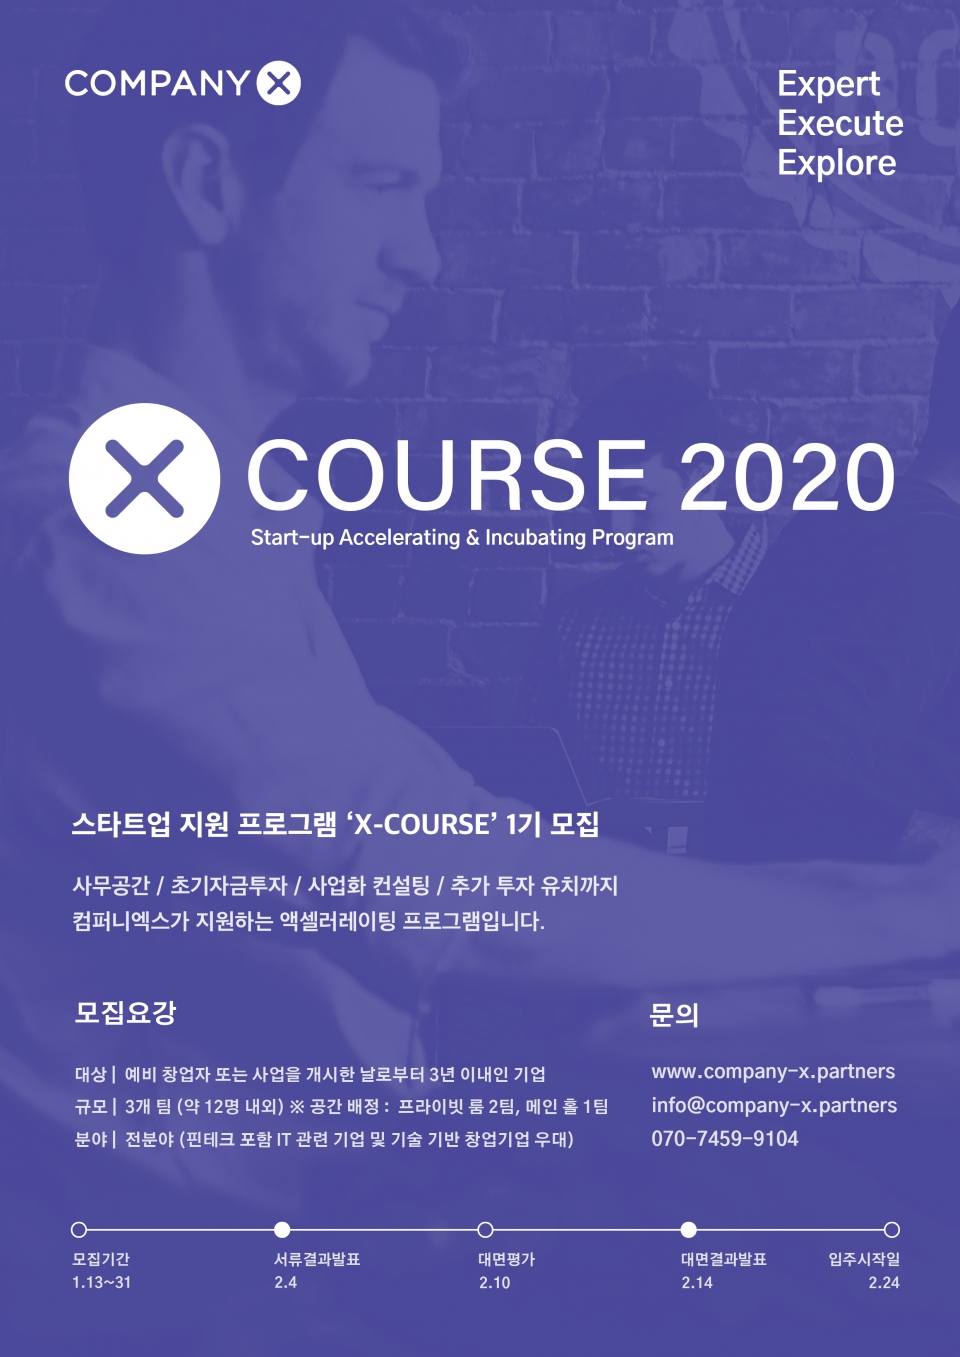 스타트업 육성 프로그램 ‘X-COURSE’ 포스터. (출처: 컴퍼니엑스)